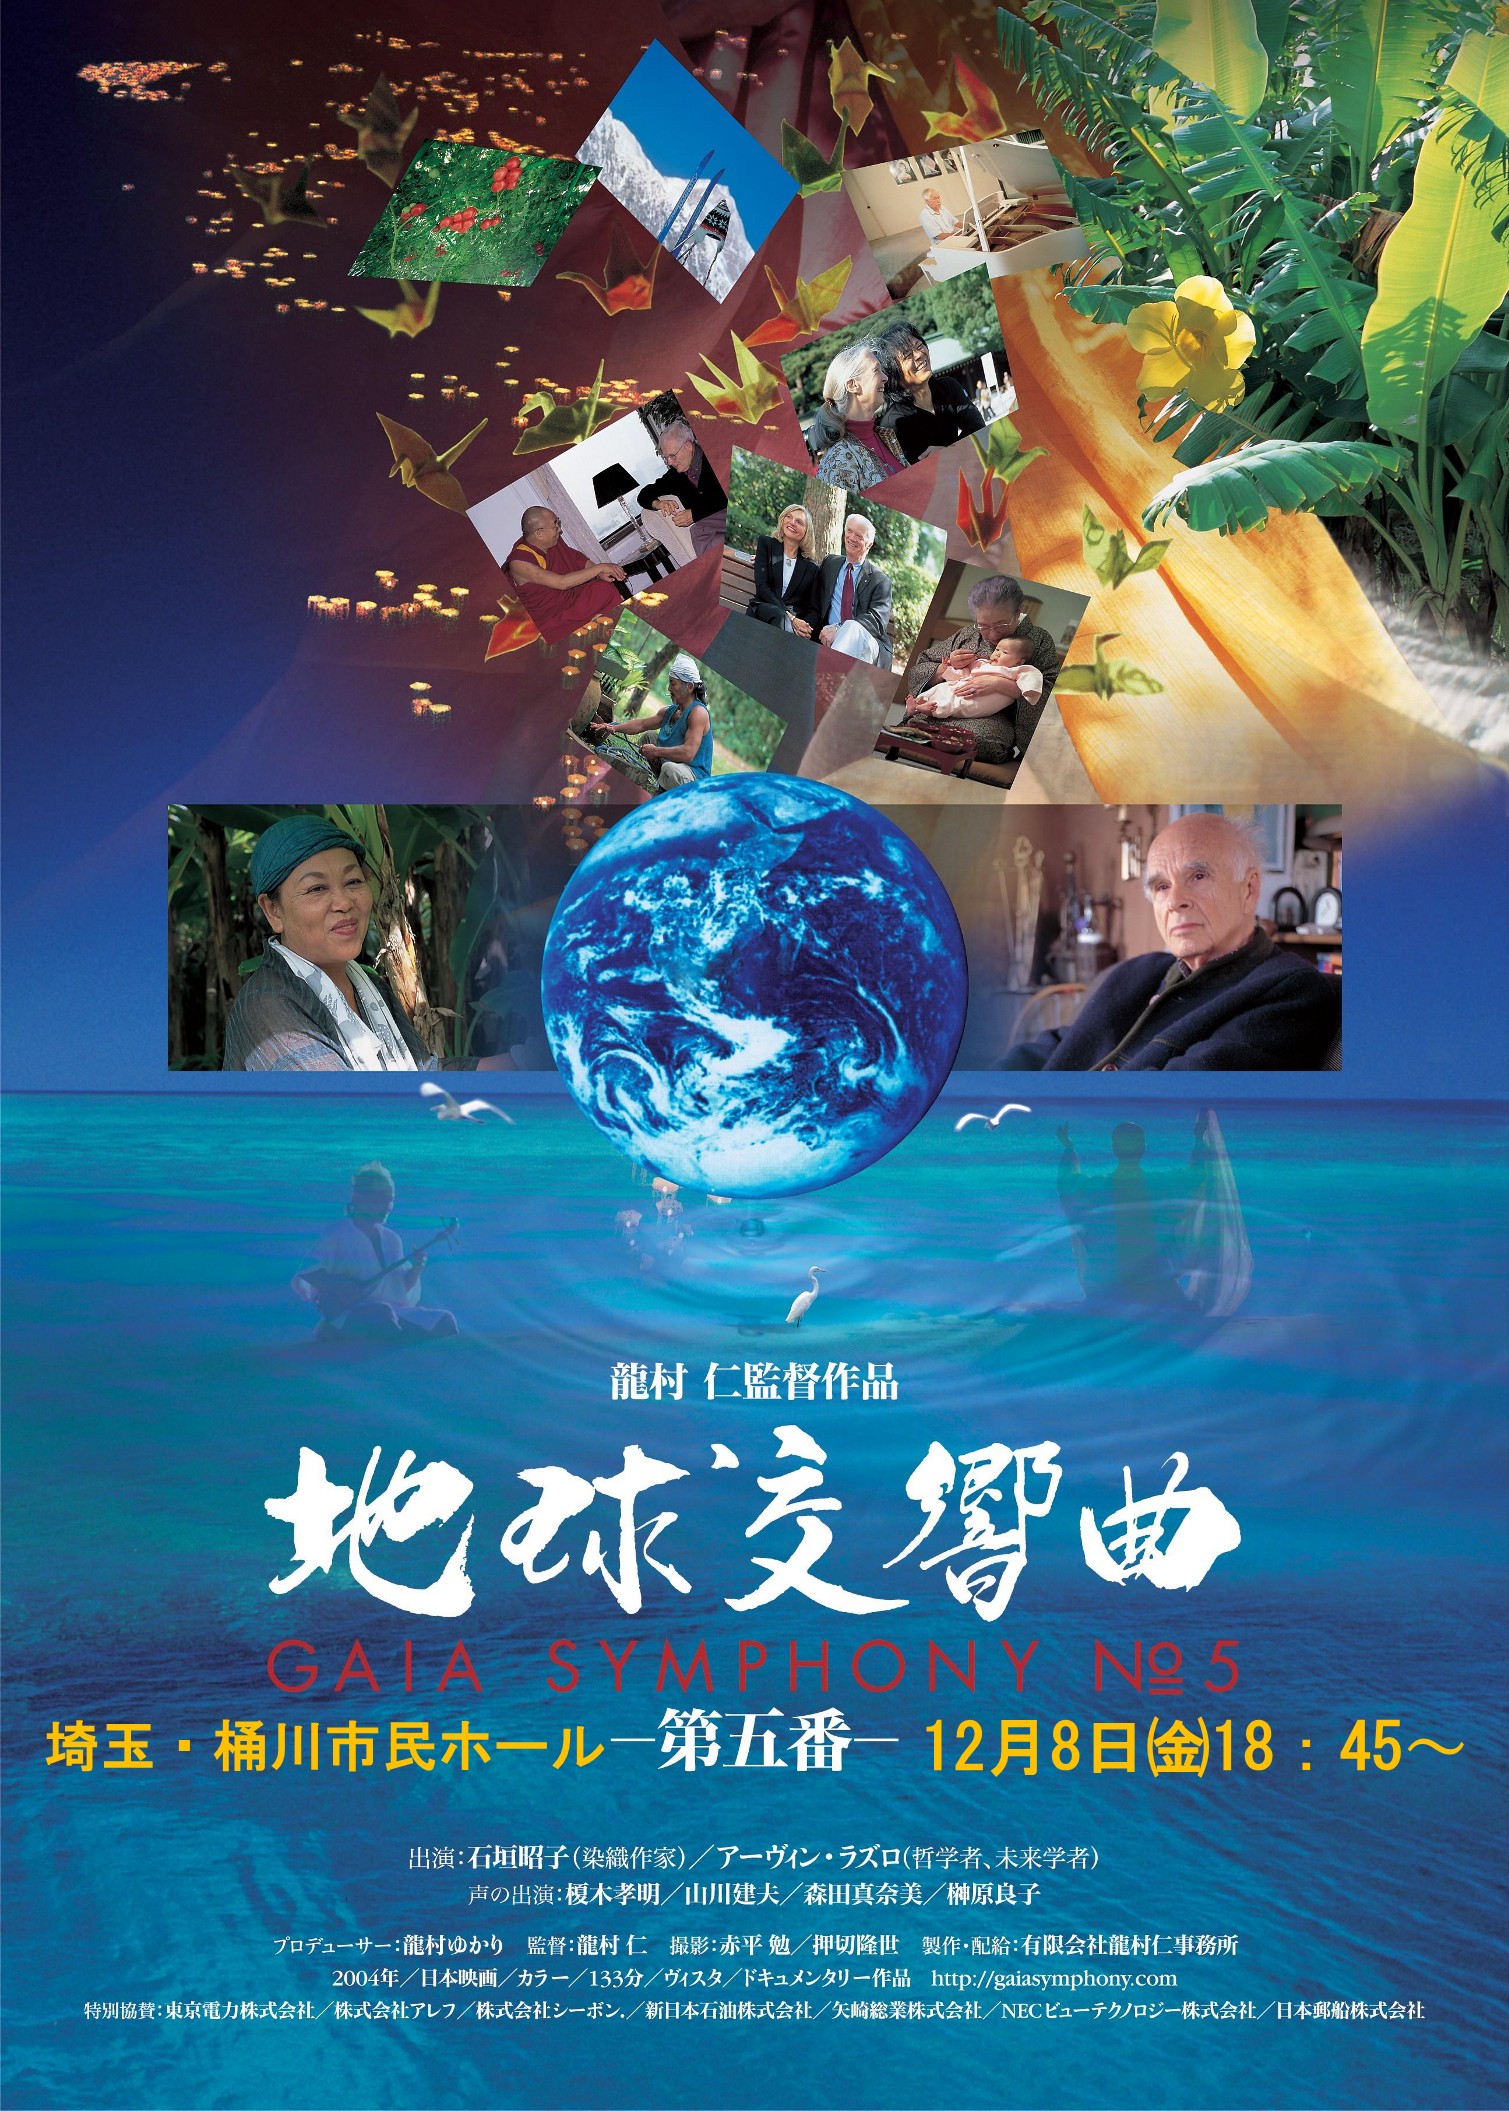 地球交響曲(ガイアシンフォニー) 1-6番セット - DVD